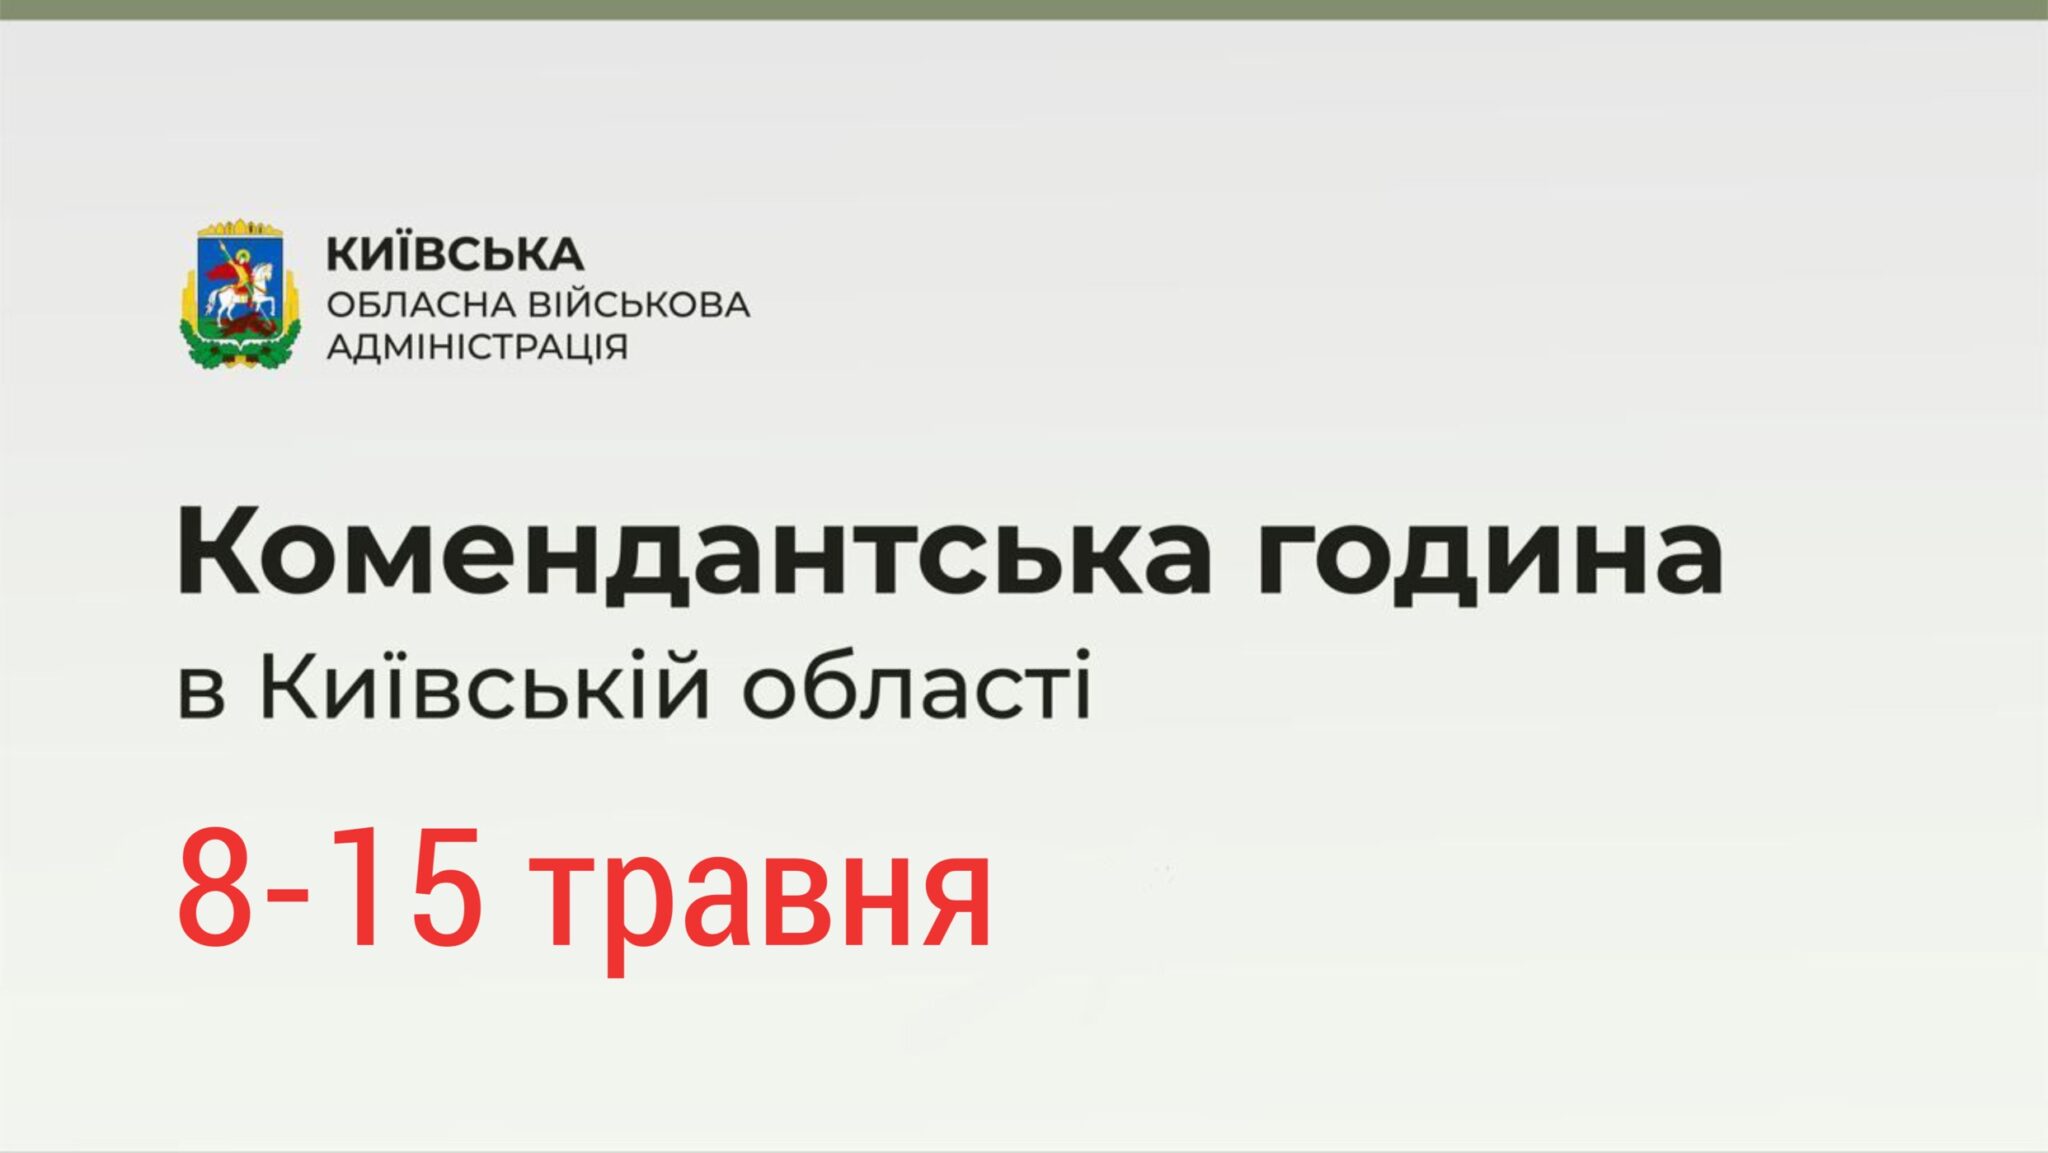 Комендантский час в Киевской области ежедневно с 22:00 до 05:00 с 8 по 15 мая 2022 года